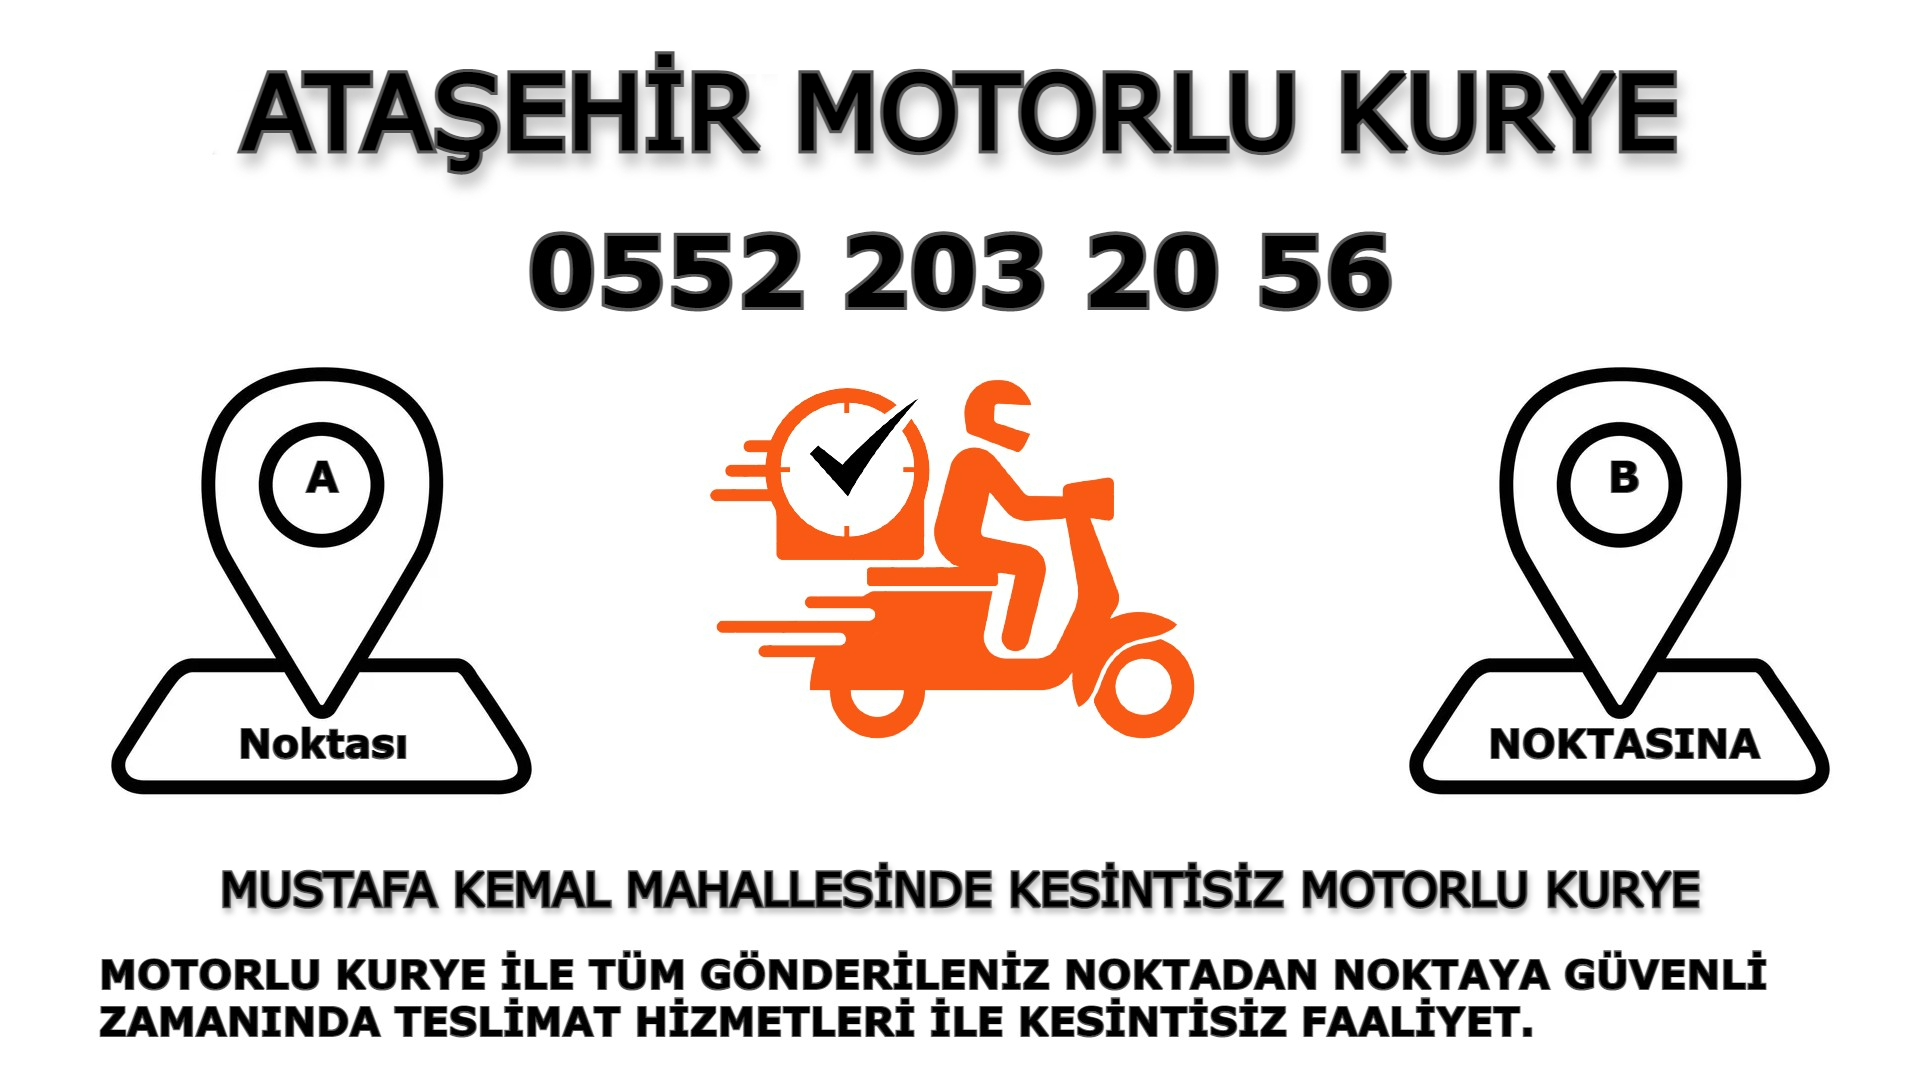 Mustafa Kemal Acil Motorlu Kurye |7/24 | 0552 203 20 56